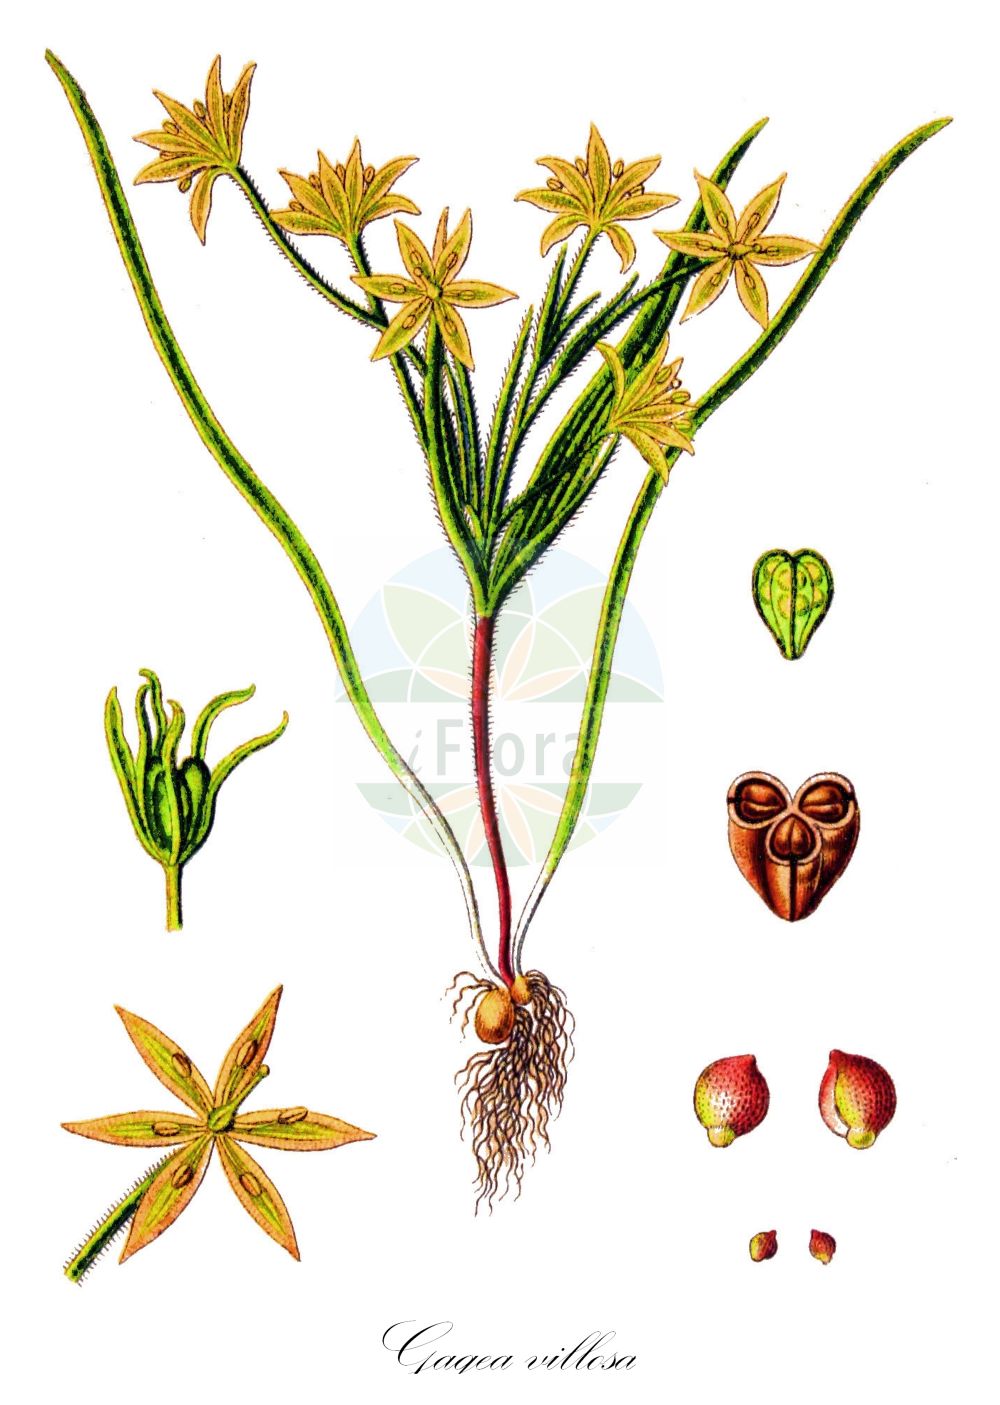 Historische Abbildung von Gagea villosa (Acker-Gelbstern - Field Star-of-Bethlehem). Das Bild zeigt Blatt, Bluete, Frucht und Same. ---- Historical Drawing of Gagea villosa (Acker-Gelbstern - Field Star-of-Bethlehem). The image is showing leaf, flower, fruit and seed.(Gagea villosa,Acker-Gelbstern,Field Star-of-Bethlehem,Ornithogalum villosum,Ornithoxanthum villosum,Gagea villosa,Acker-Gelbstern,Field Star-of-Bethlehem,Hairy Star-of-Bethlehem,Gagea,Gelbstern,Star Of Bethlehem,Liliaceae,Liliengewächse,Lily family,Blatt,Bluete,Frucht,Same,leaf,flower,fruit,seed,Sturm (1796f))